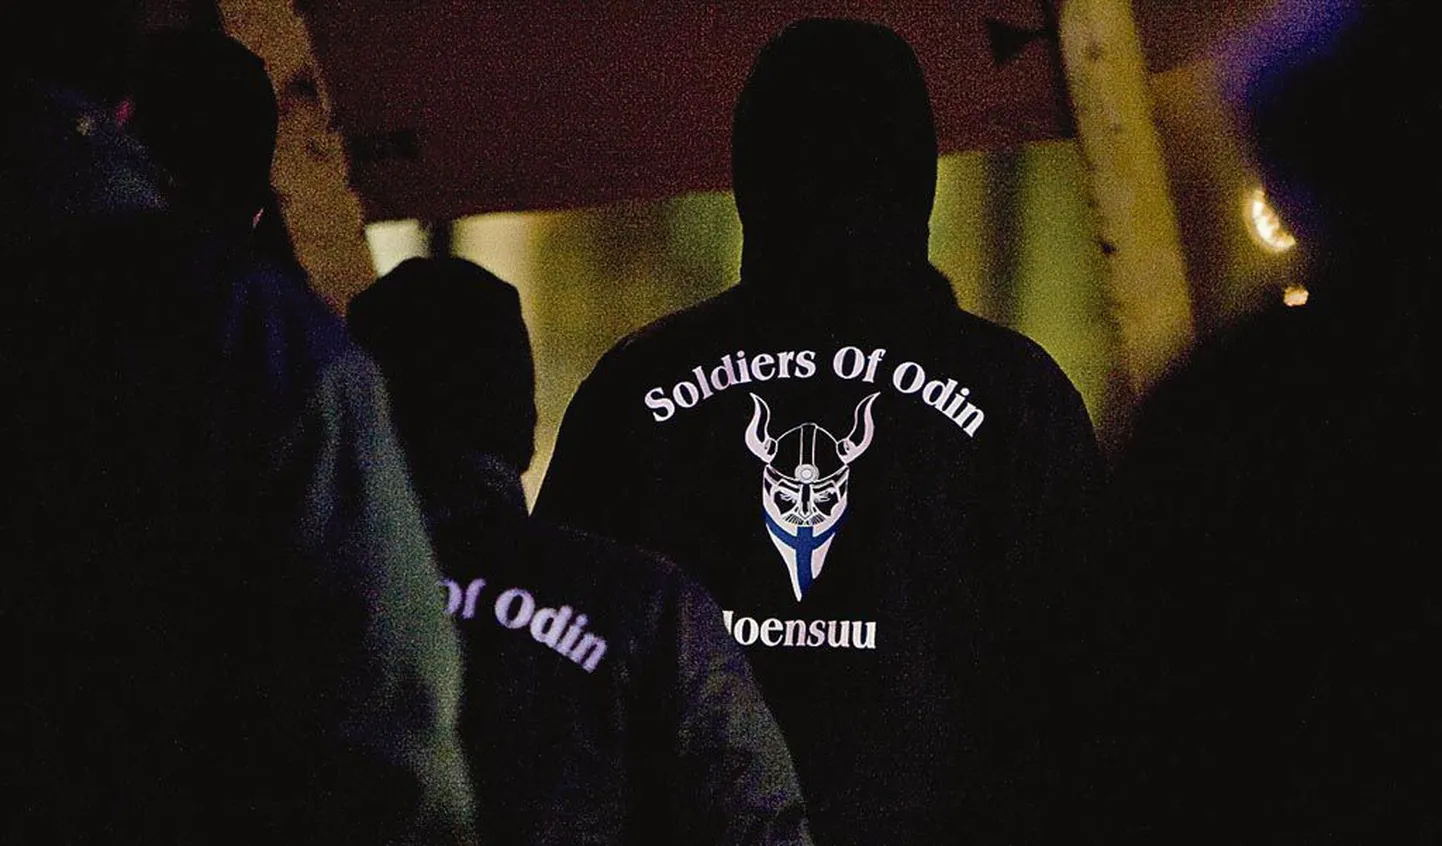 Pildil on Joensuu linna Odini sõdurid.